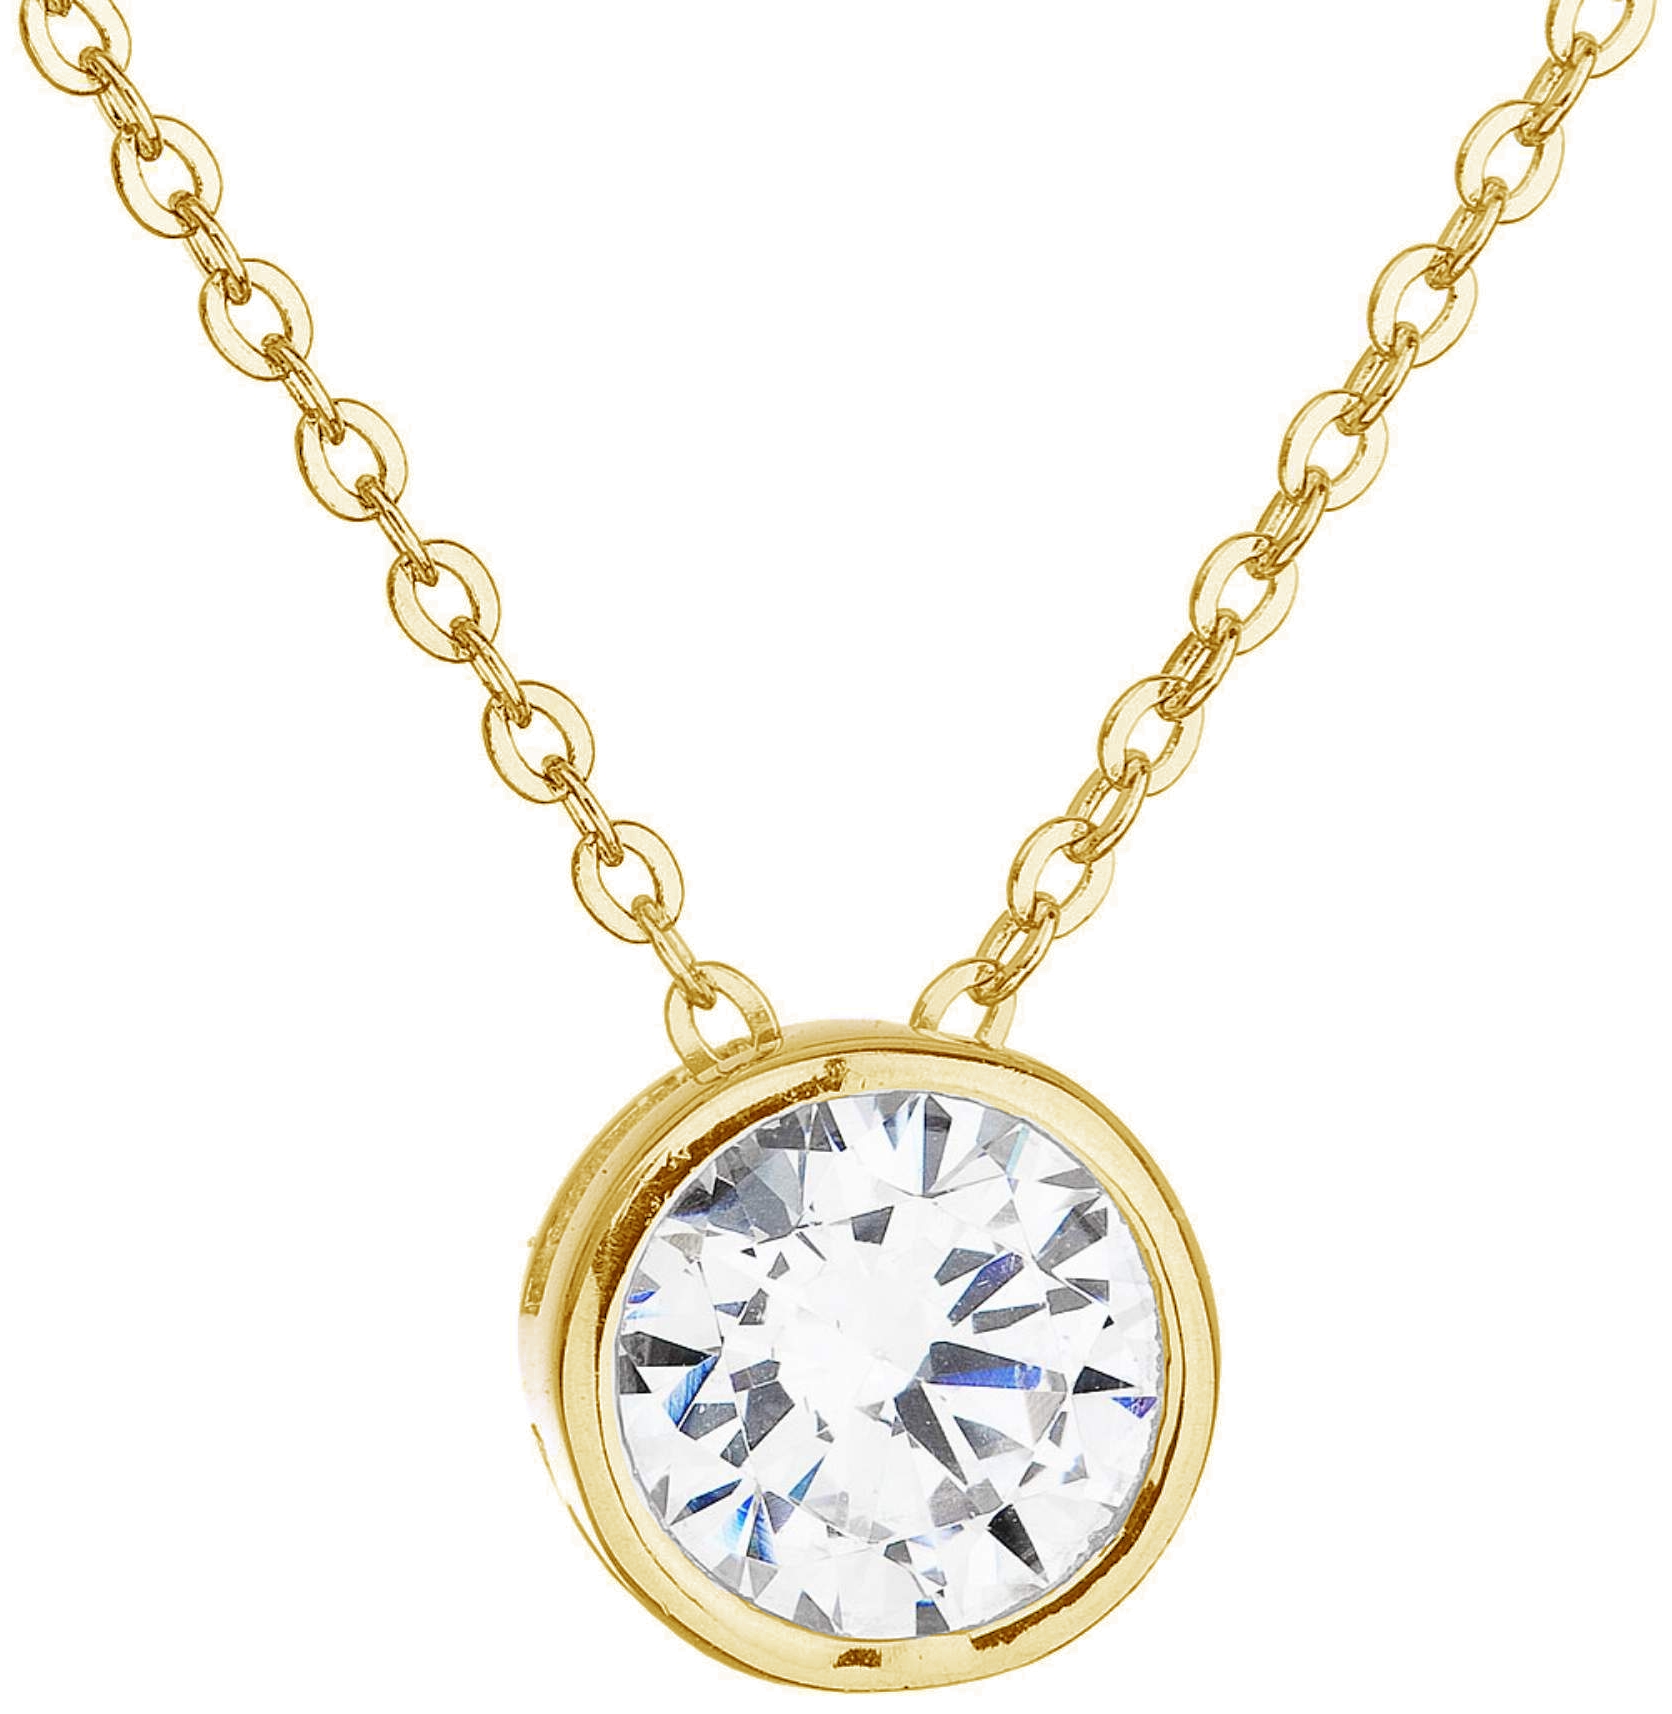 Zlatý náhrdelník s bielym zirkónom 92Z00013 crystal